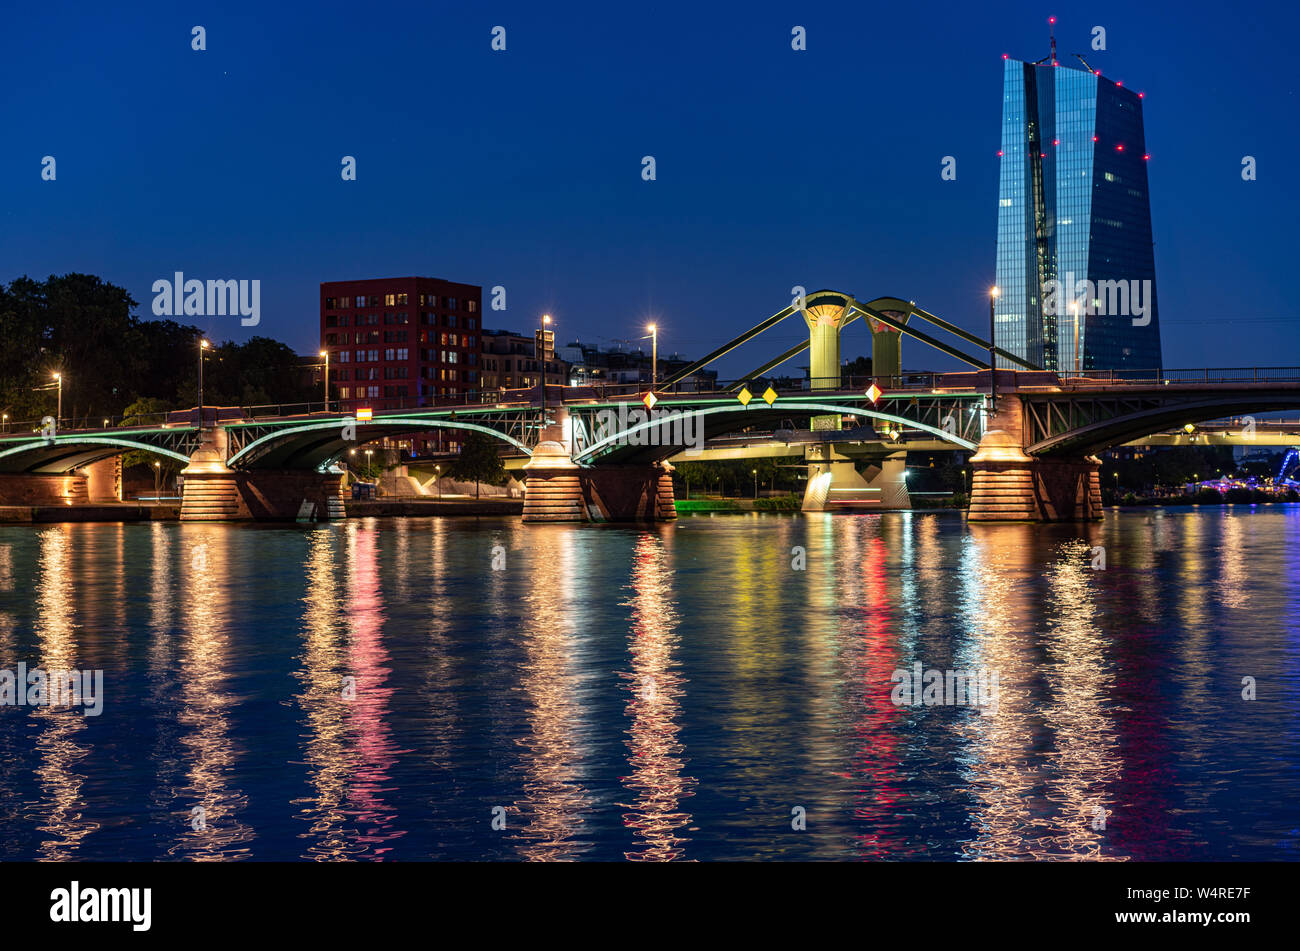 23 luglio 2019, Assia, Frankfurt/Main: la sede della Banca centrale europea (BCE, r) ad est di Francoforte dietro il illuminato ponti principale in tarda serata. Foto: Frank Rumpenhorst/dpa Foto Stock